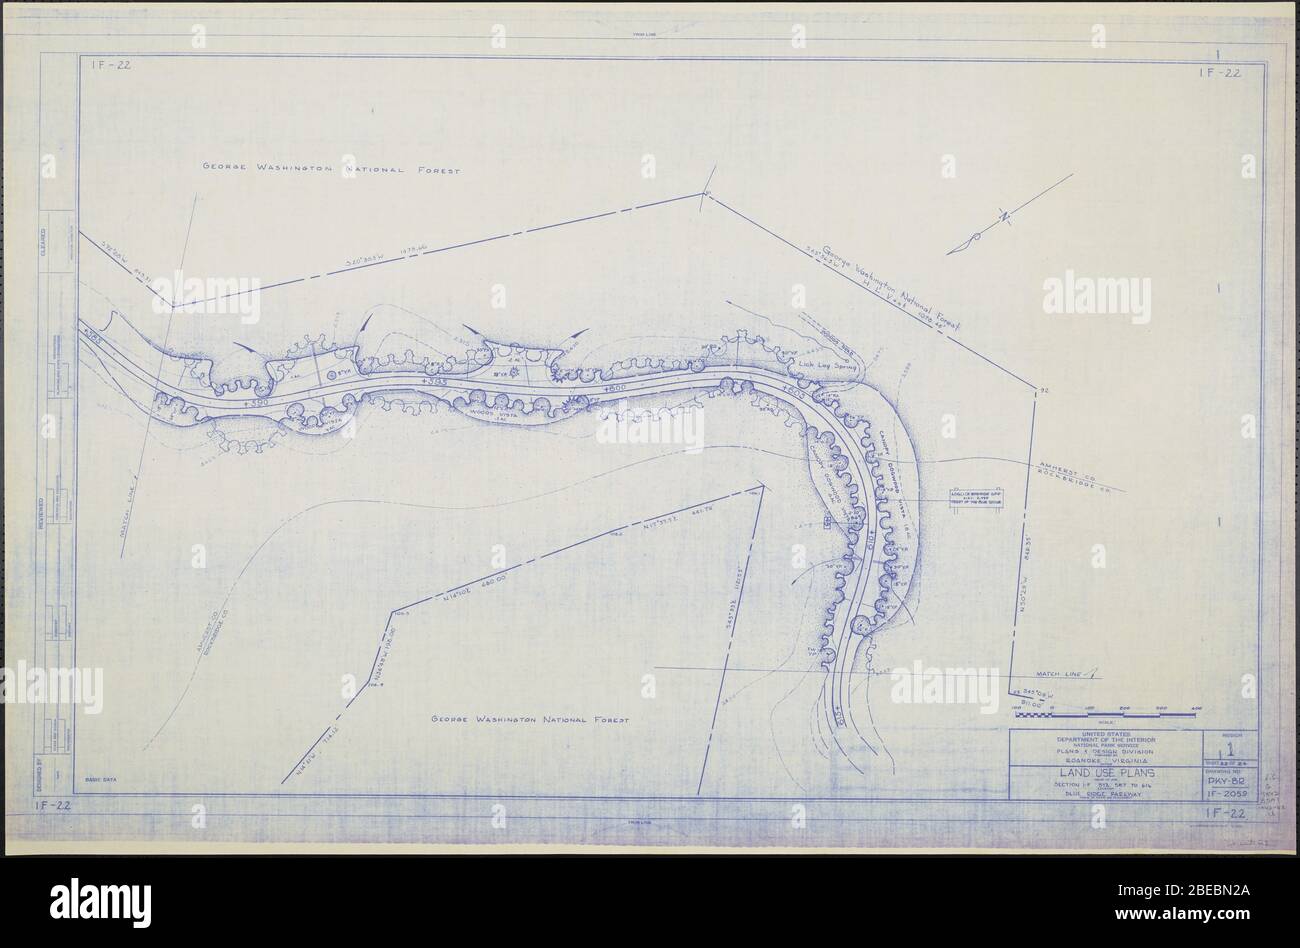 'Blue Ridge Parkway, Region 1 Blatt 22; EINE Karte des Blue Ridge Parkway mit Details über die nahe gelegenen Bäume, Sträucher und Sämlinge. Umfasst Loglick Springs Gap und den George Washington National Forest. Zeichnung Nr. 1F-22. Skala 1=100'.; ' Stockfoto